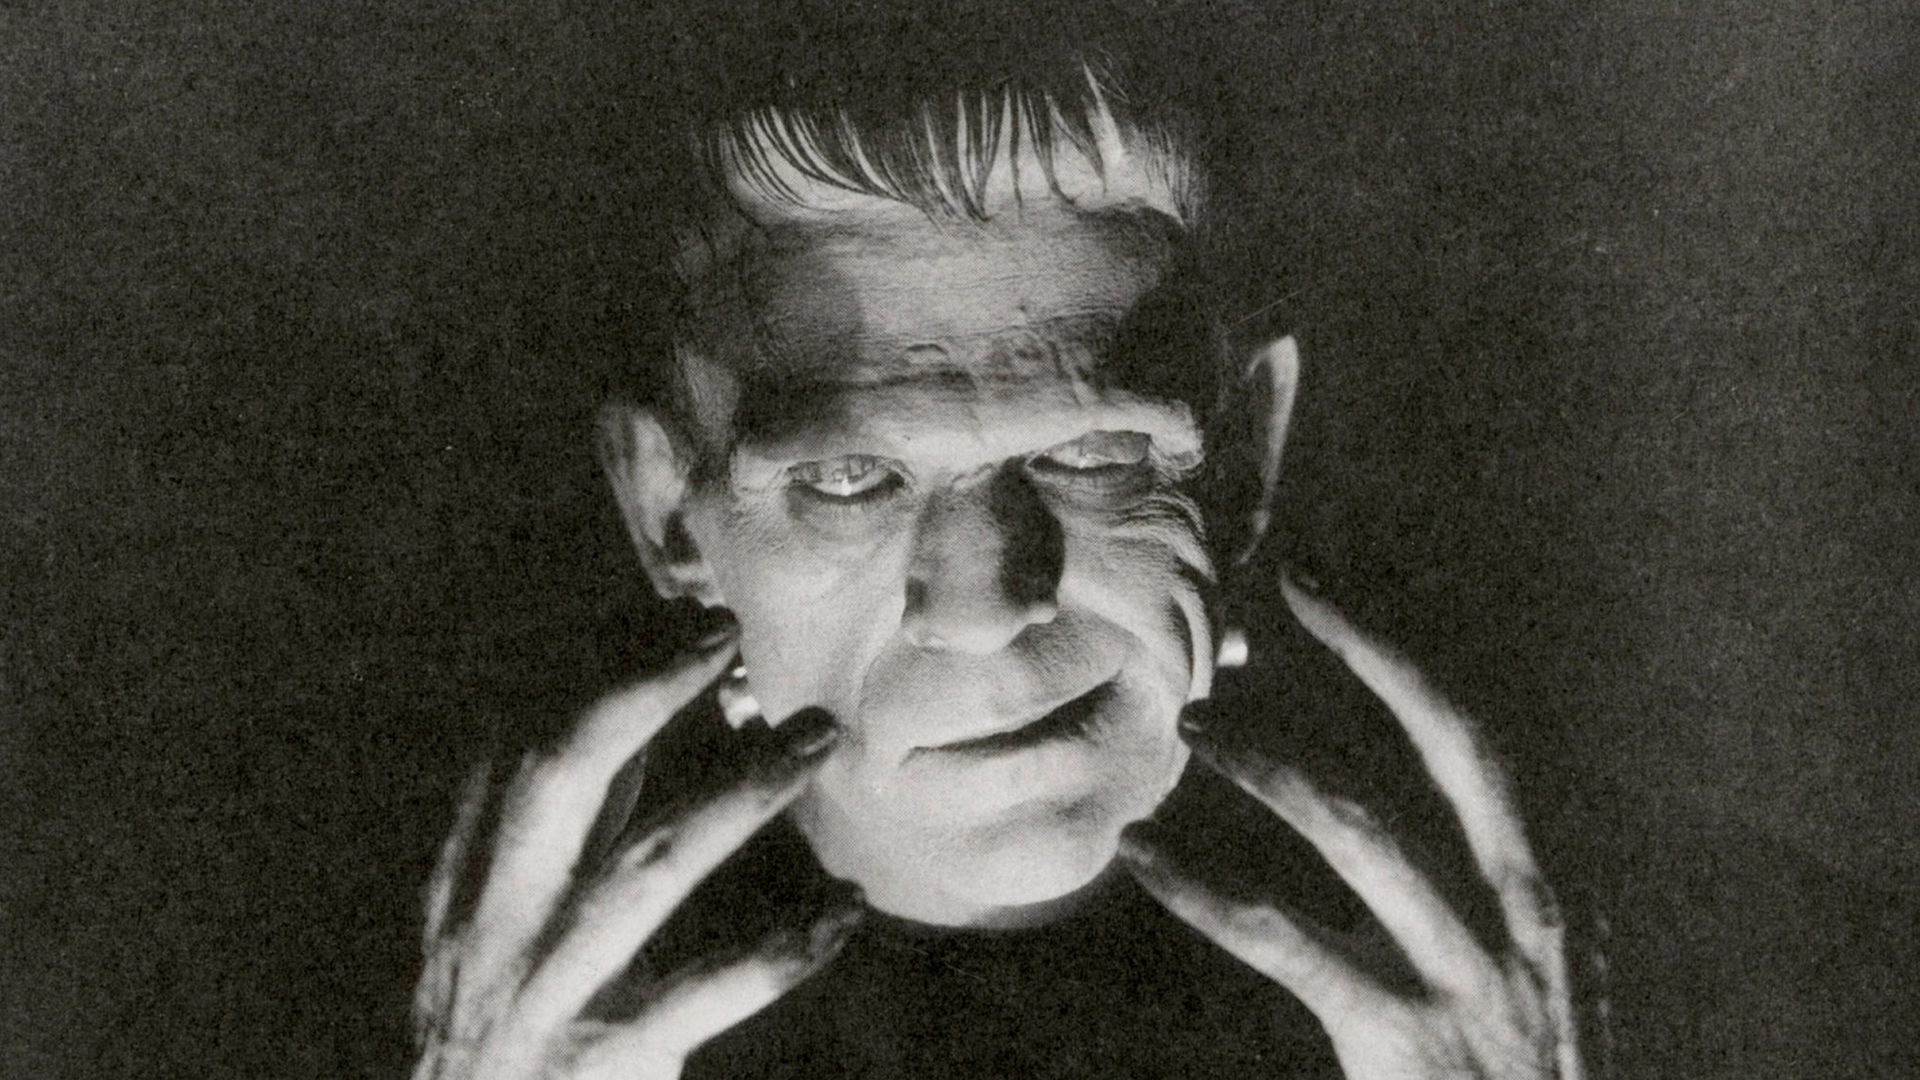 Boris Karloff als Monster im Film "Frankenstein" von 1931 von James Whale